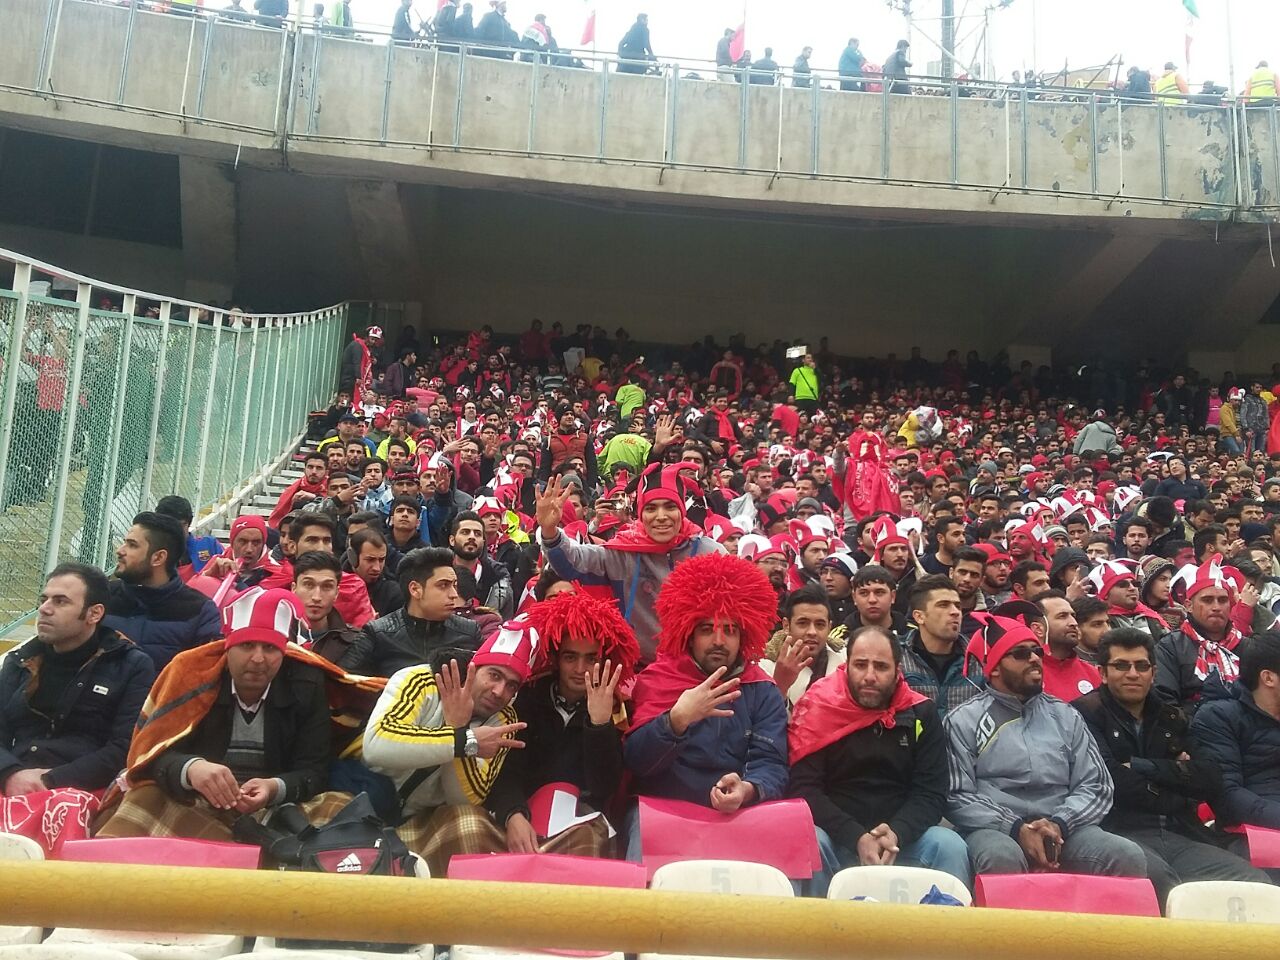 حدود ۴۰ هزار نفر در استادیوم آزادی/ کاورها از روی زمین چمن جمع شد+ تصاویر